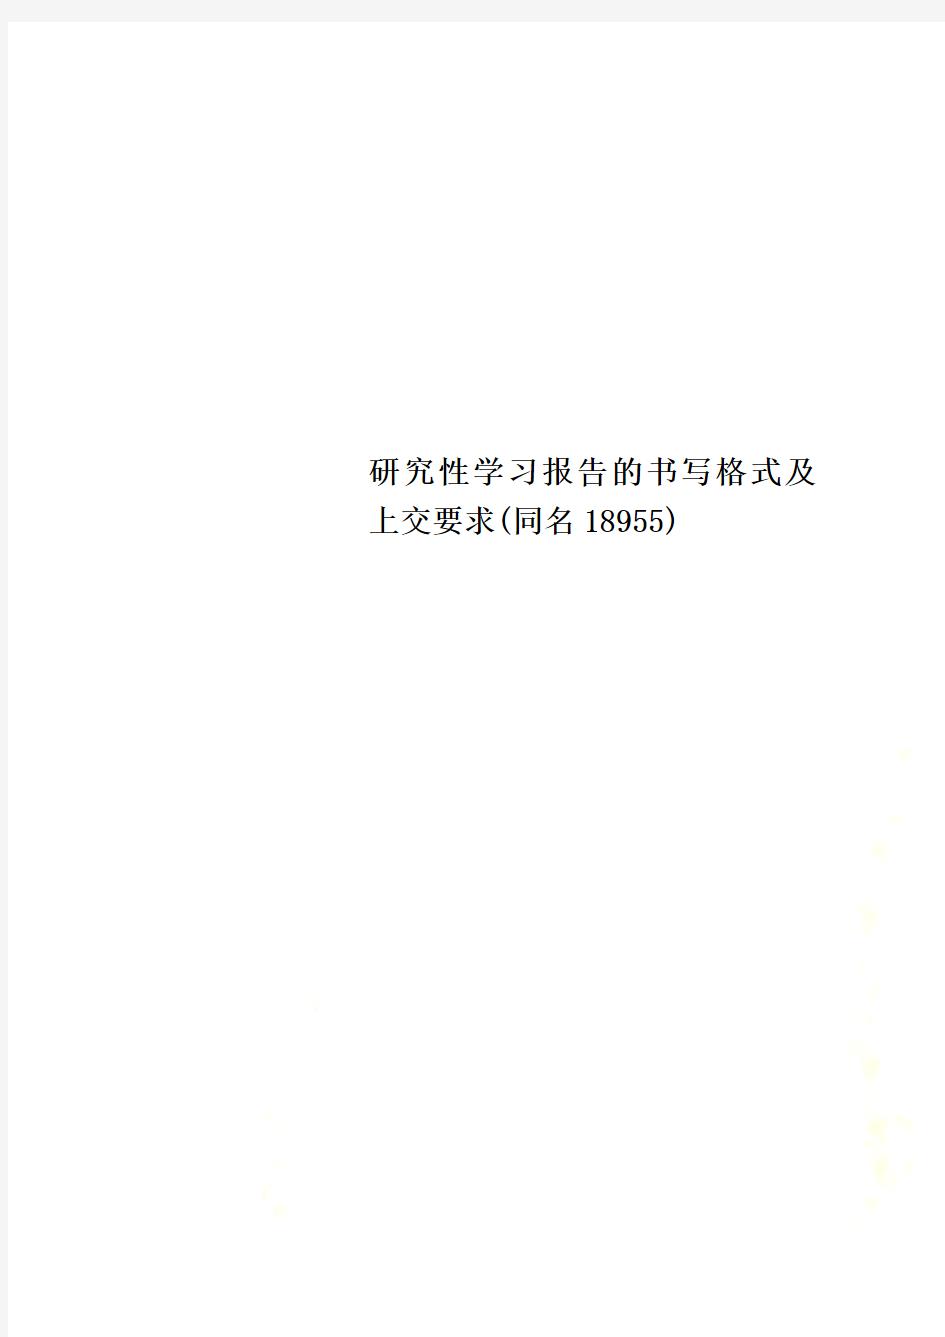 研究性学习报告的书写格式及上交要求(同名18955)